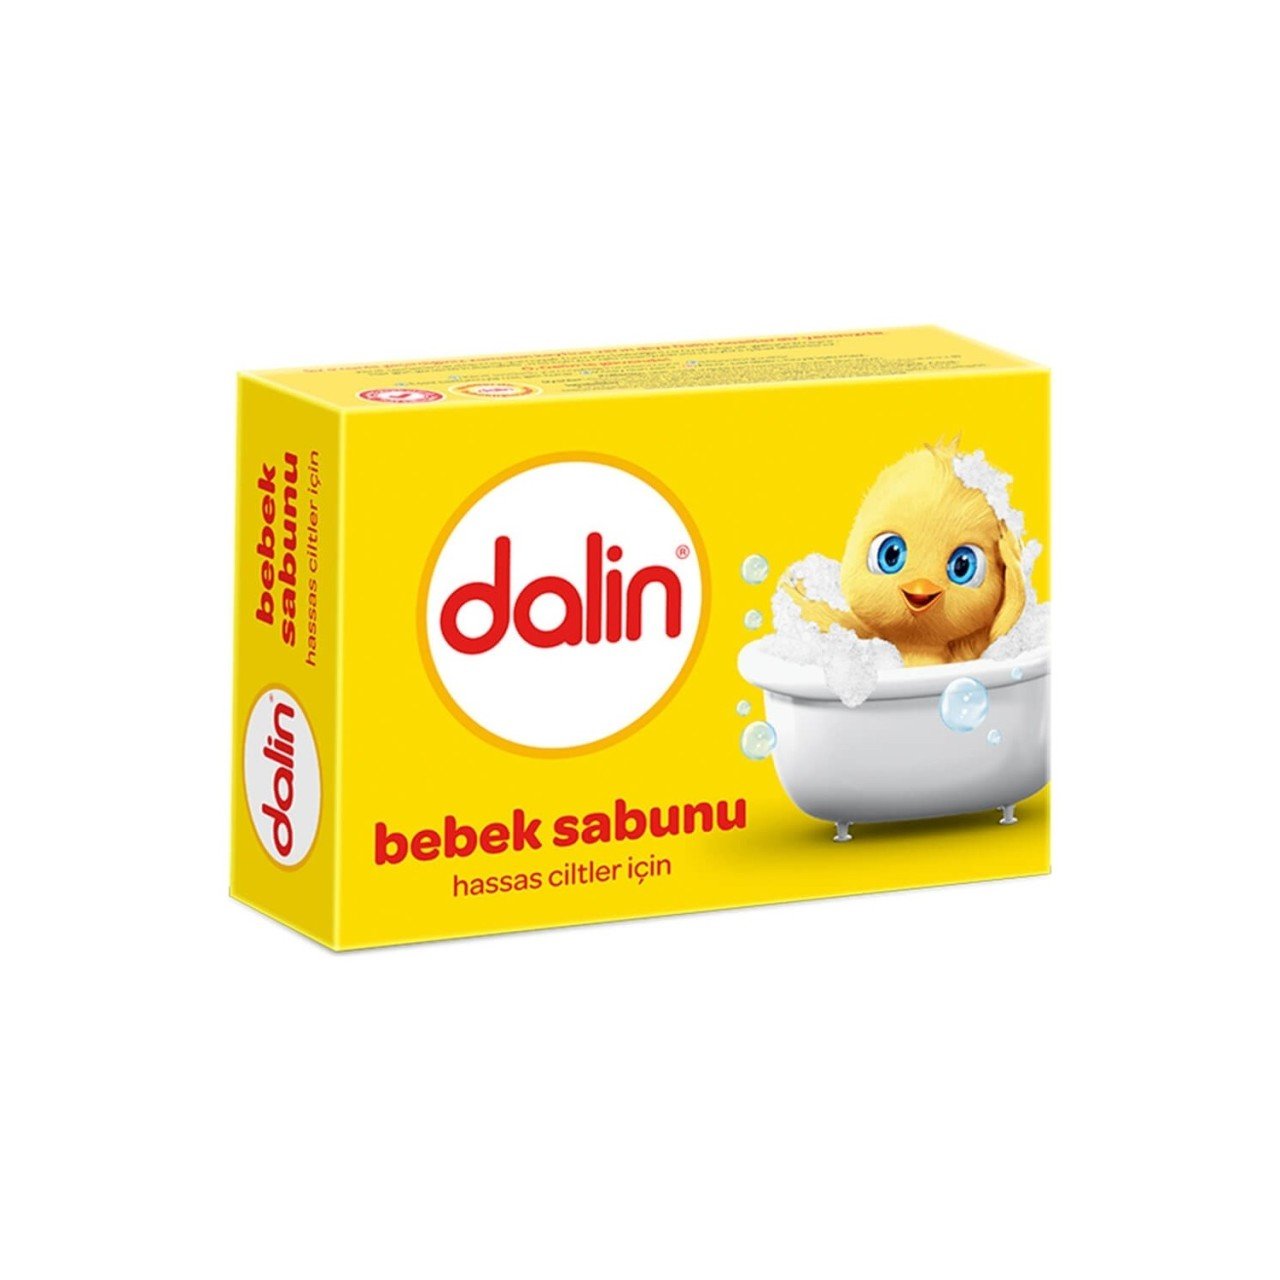 Dalin Bebe Sabunu 100 gr 3015